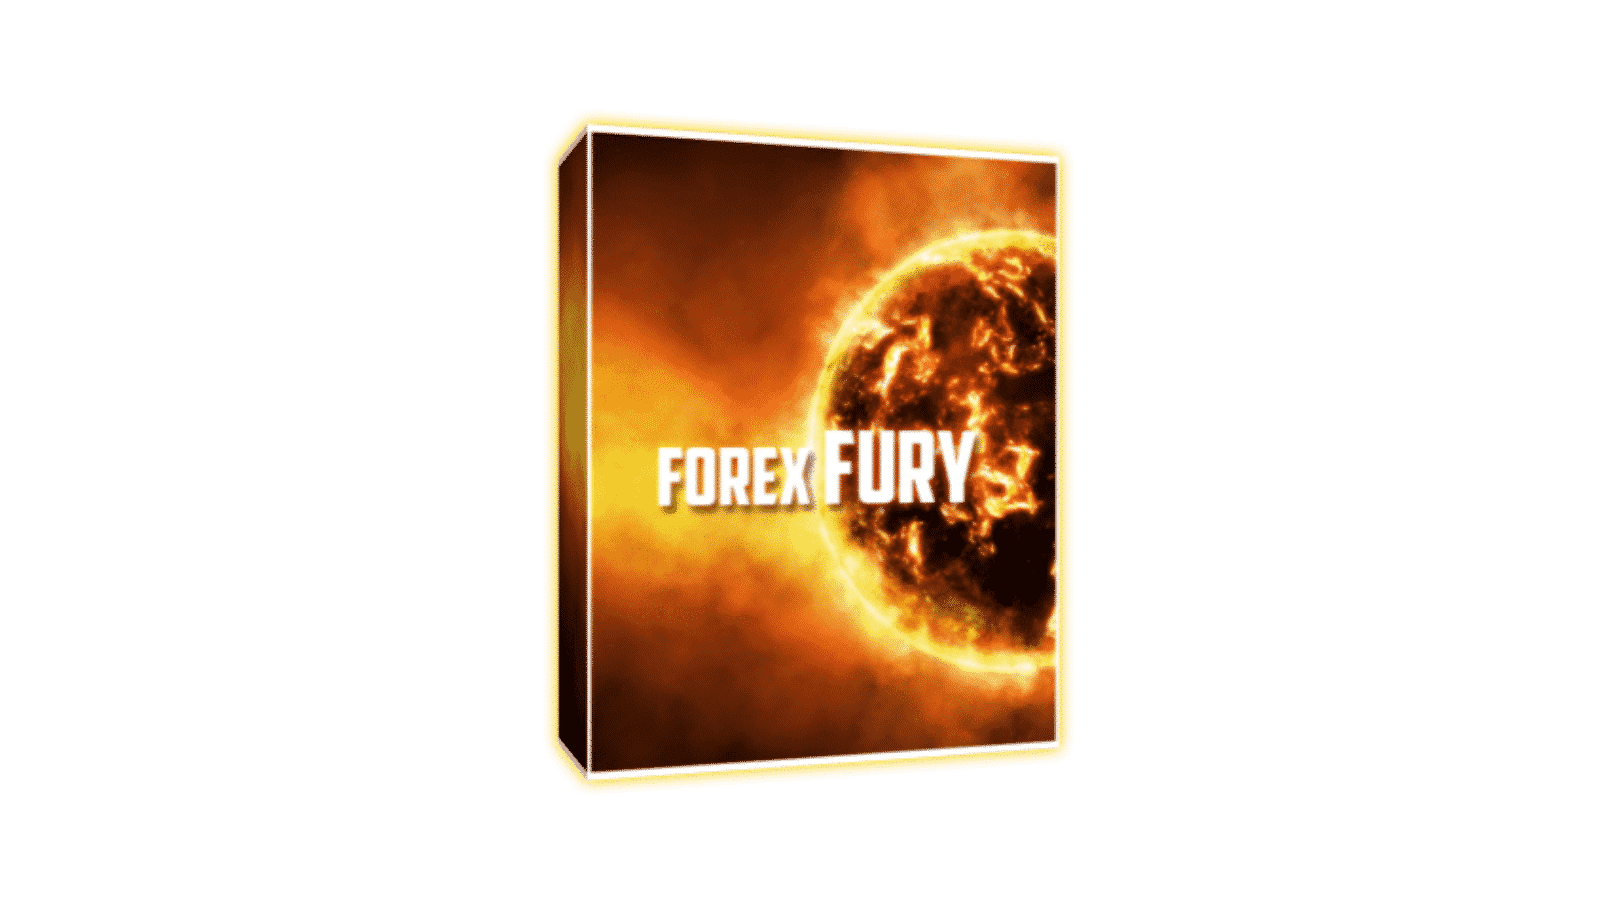 Forex fury best settings